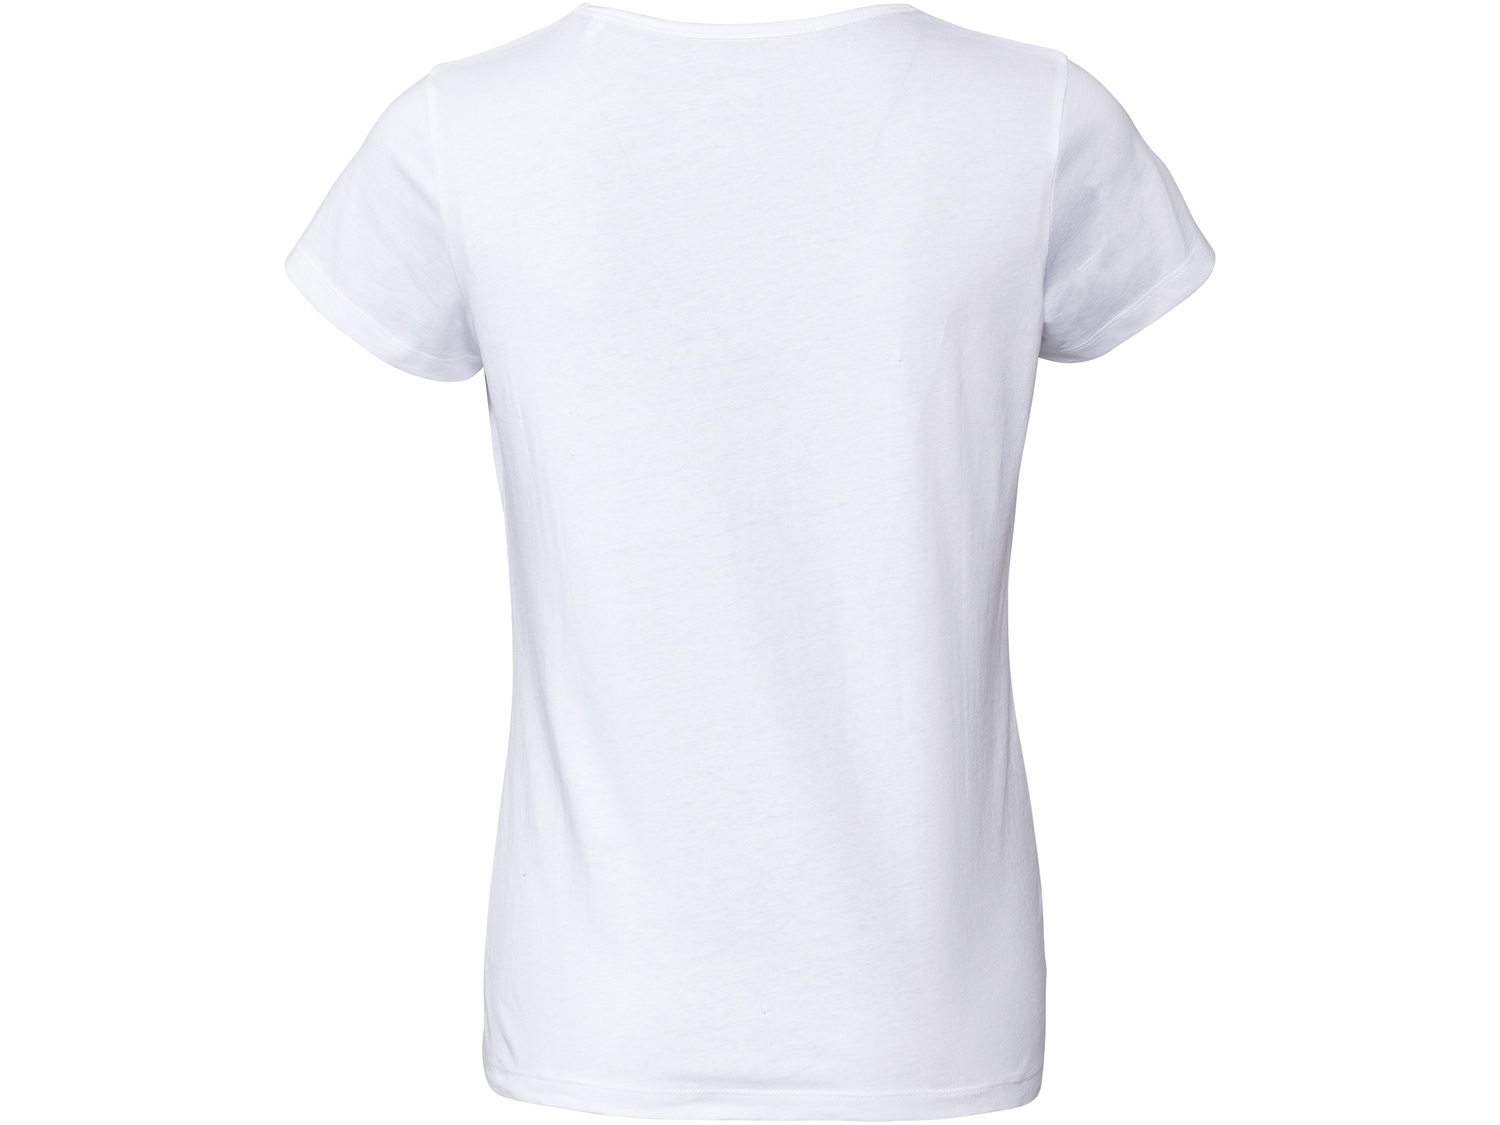 T-shirt damski Esmara, cena 12,99 PLN 
- rozmiary: M-XL
- 100% bawełny
Dostępne ...